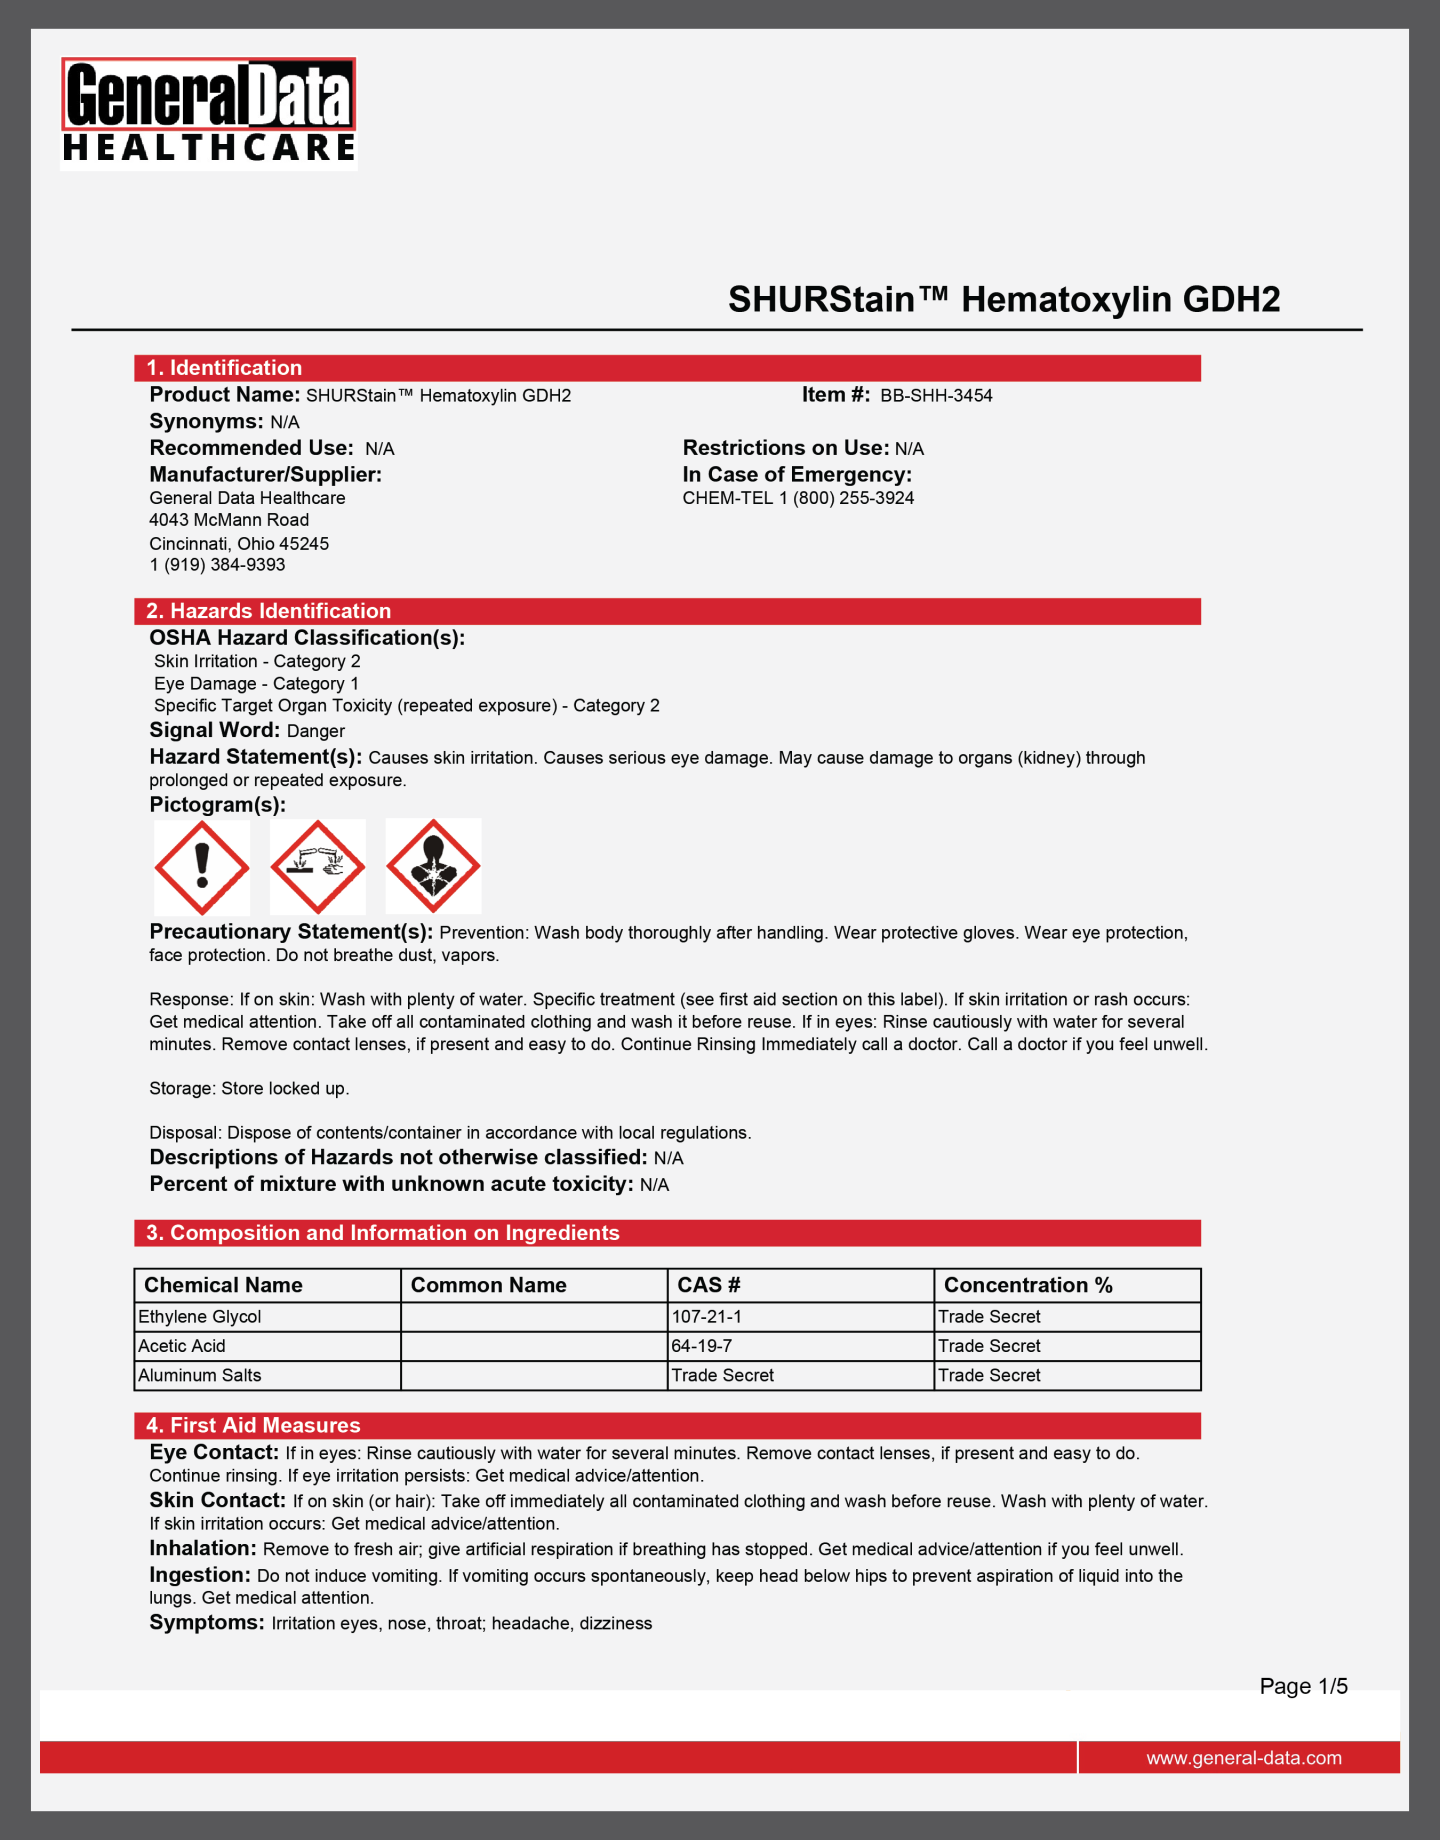 SHURStain Hematoxylin GDH2 Safety Data Sheet 